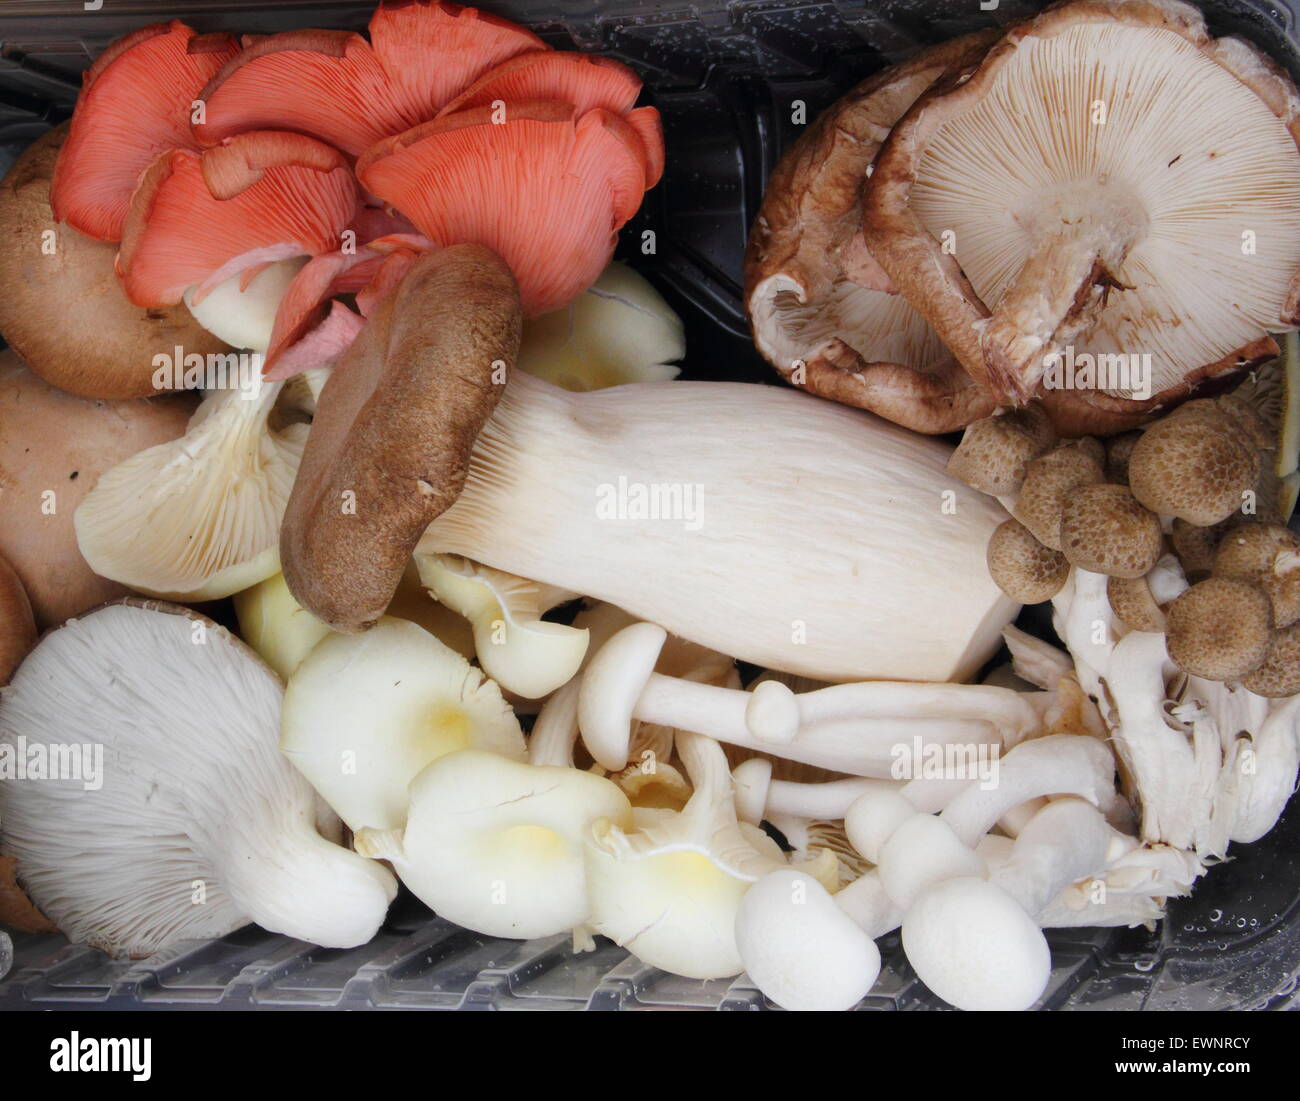 Une variété de champignons comestibles exotiques sont proposés à la vente à un marché d'alimentation dans le Derbyshire, Angleterre, Royaume-Uni Banque D'Images